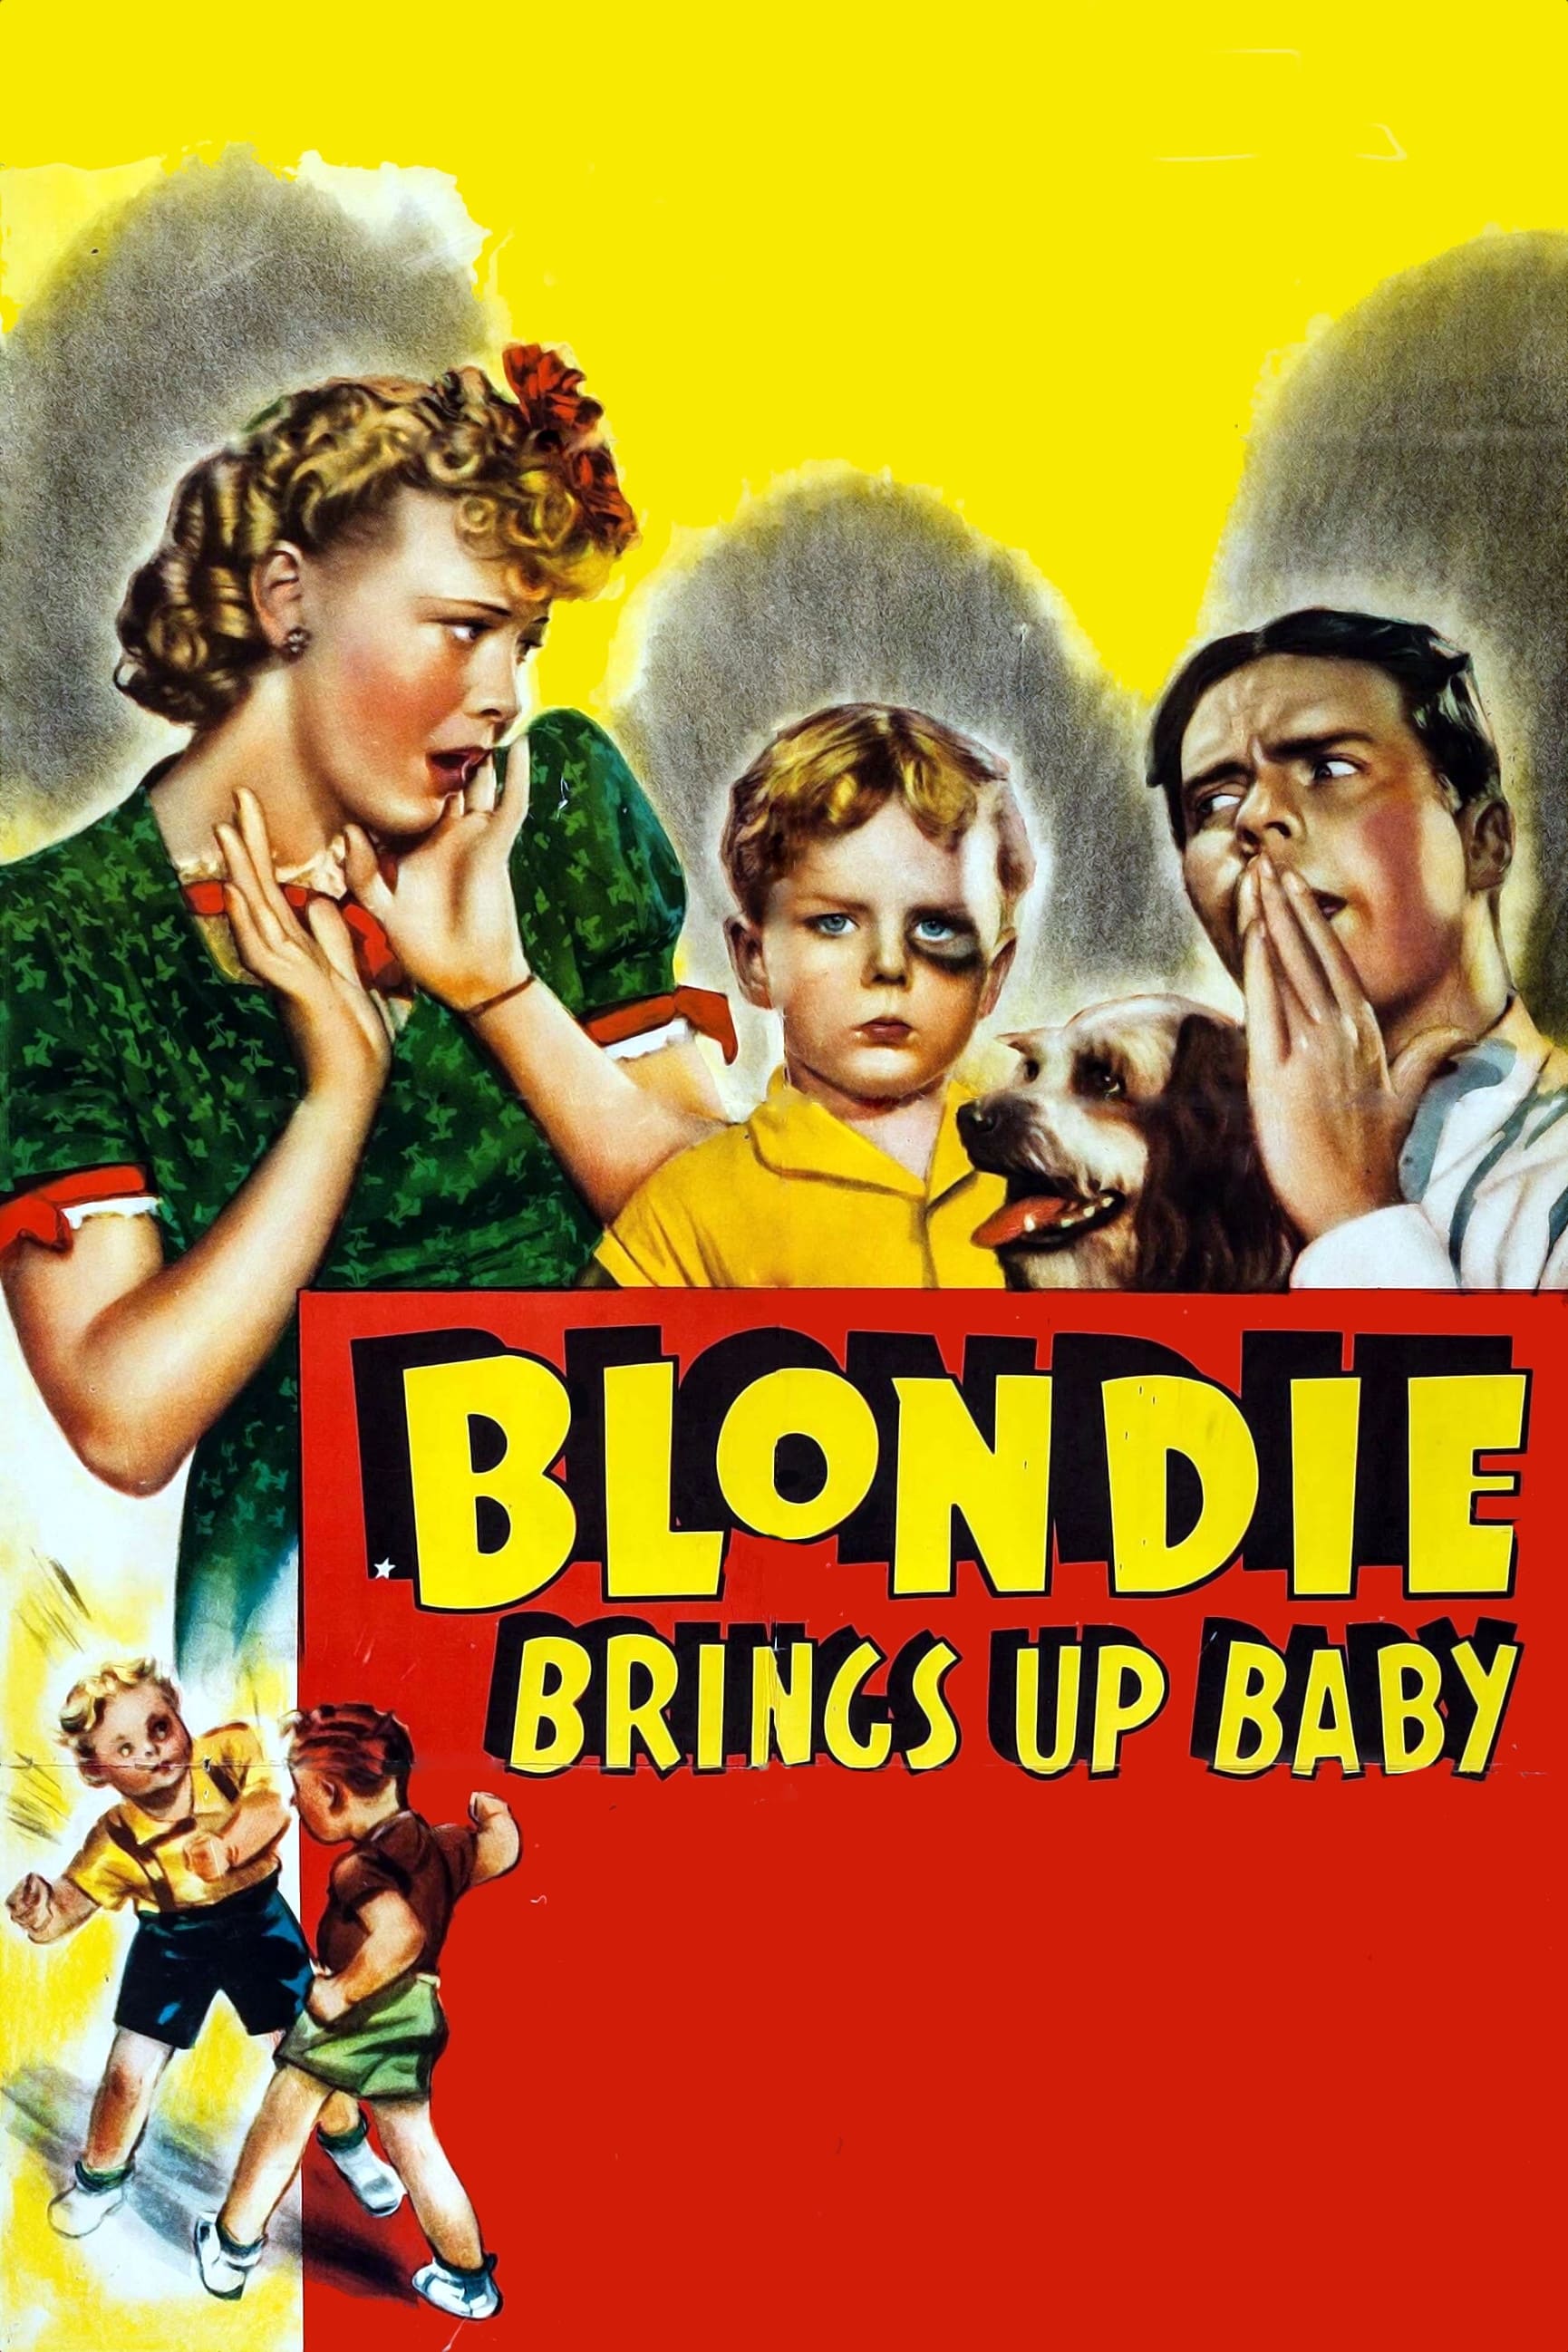 Blondie Brings Up Baby